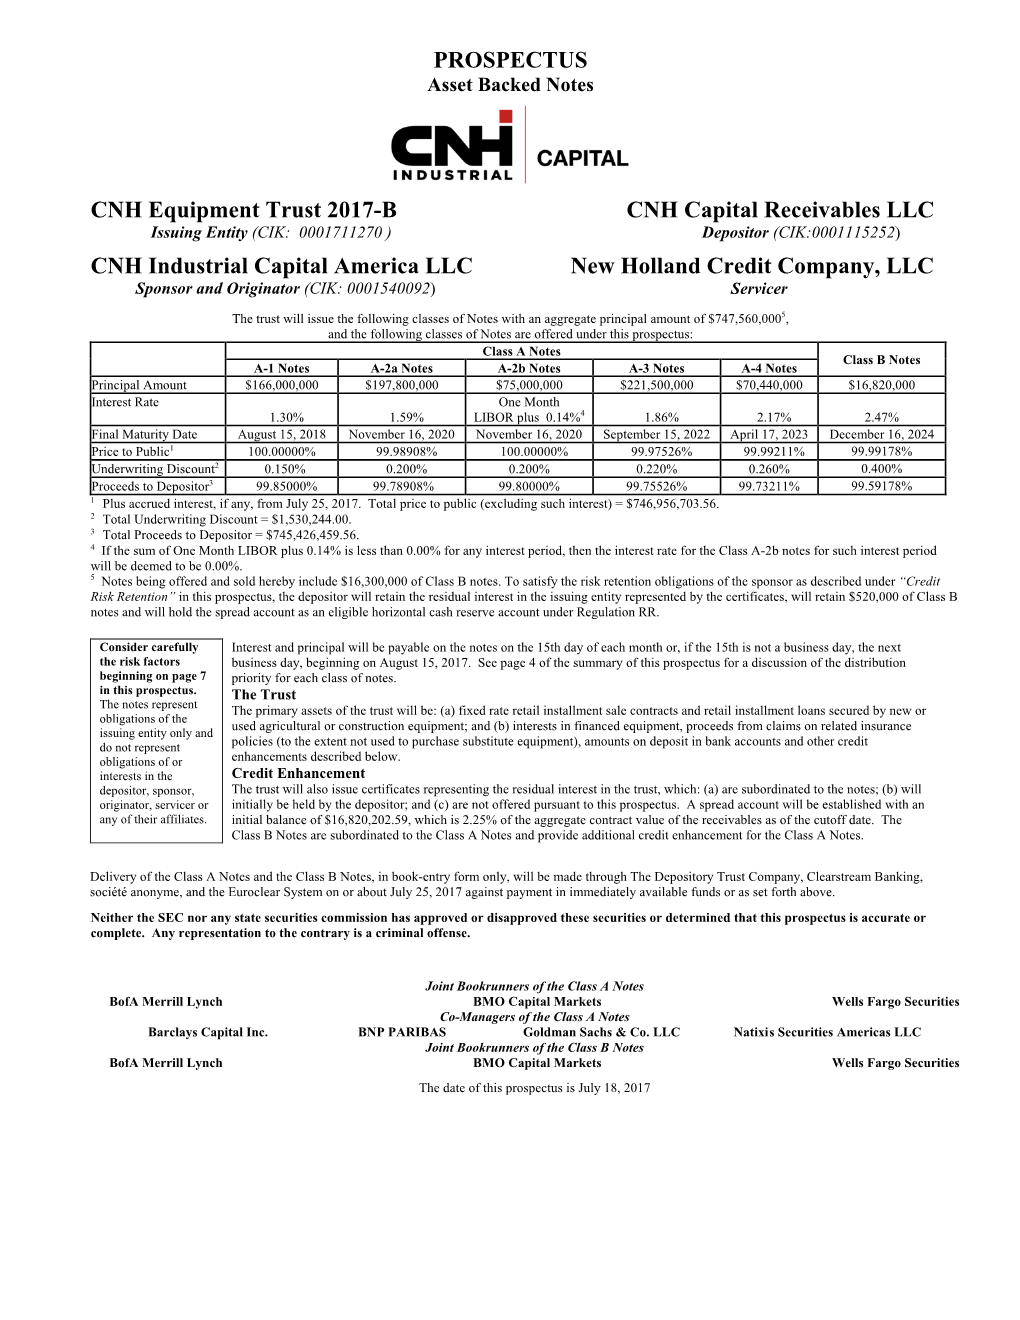 PROSPECTUS CNH Equipment Trust 2017-B